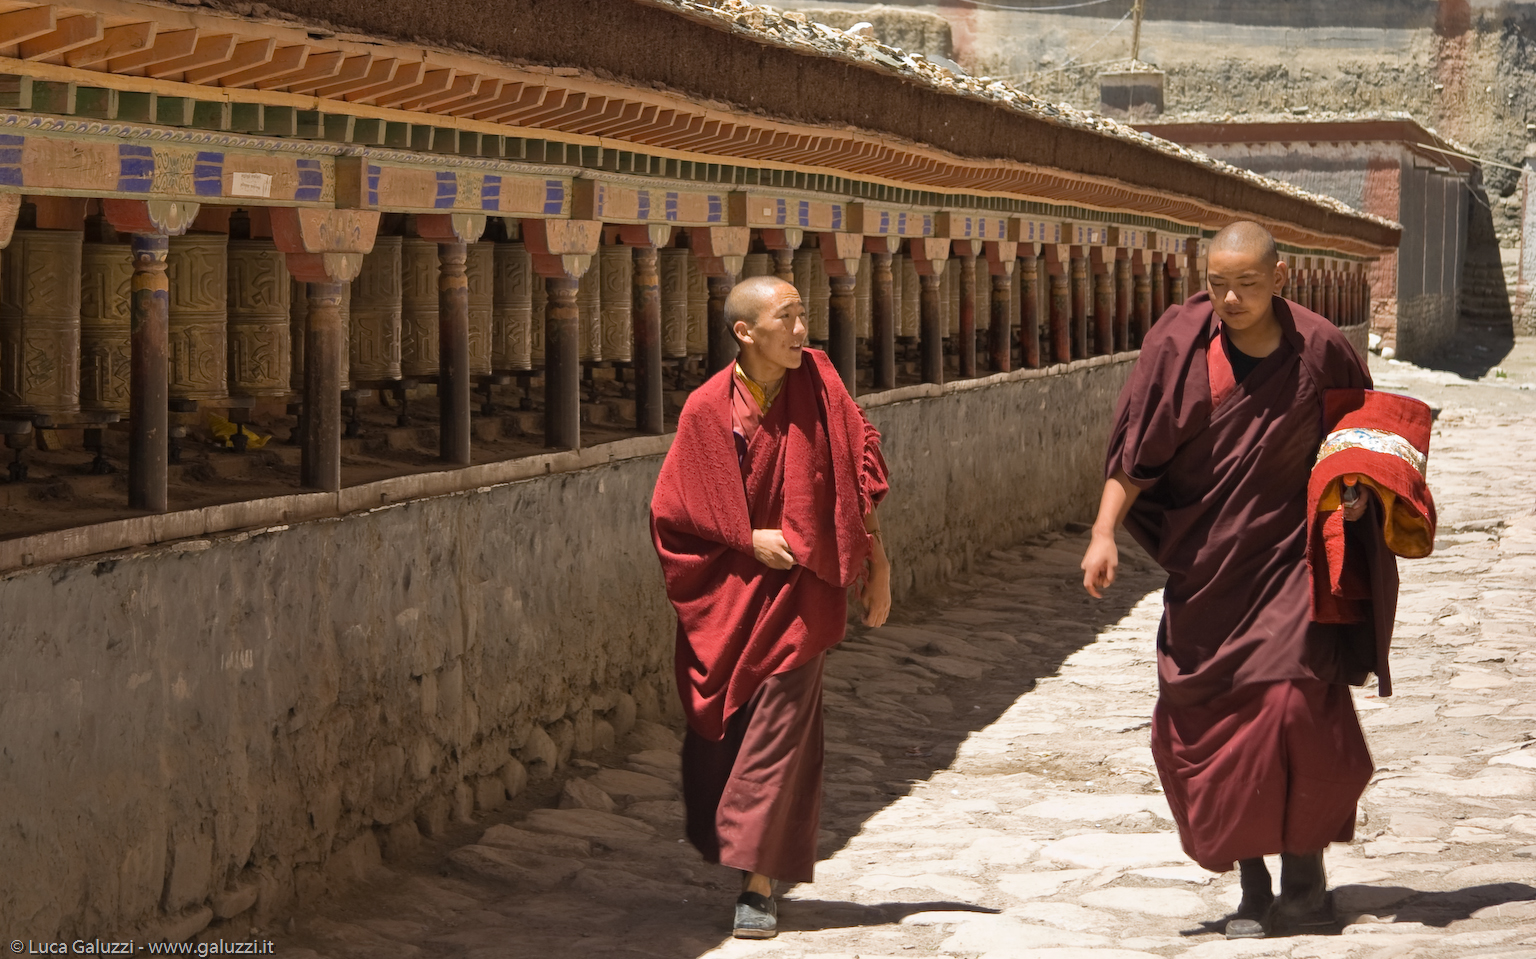 Il monastero andò distrutto negli anni della Rivoluzione Culturale e i monaci superstiti si rifugiarono in India. Oggi la vita monacale sta lentamente riprendendo.